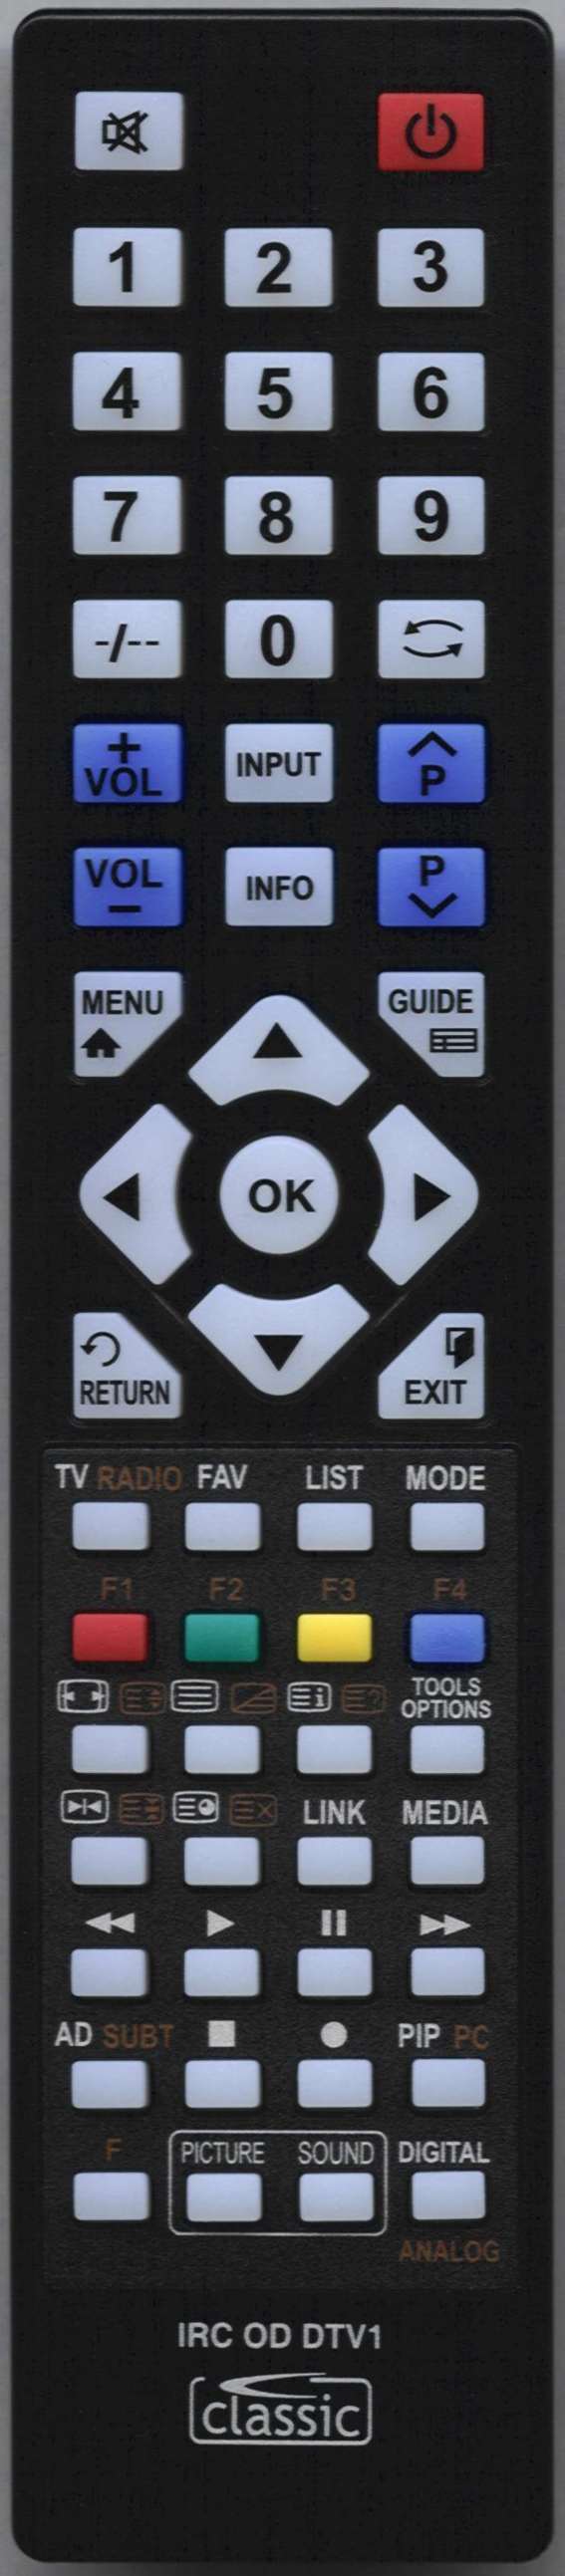 LG AKB75675311 Remote Control Alternative